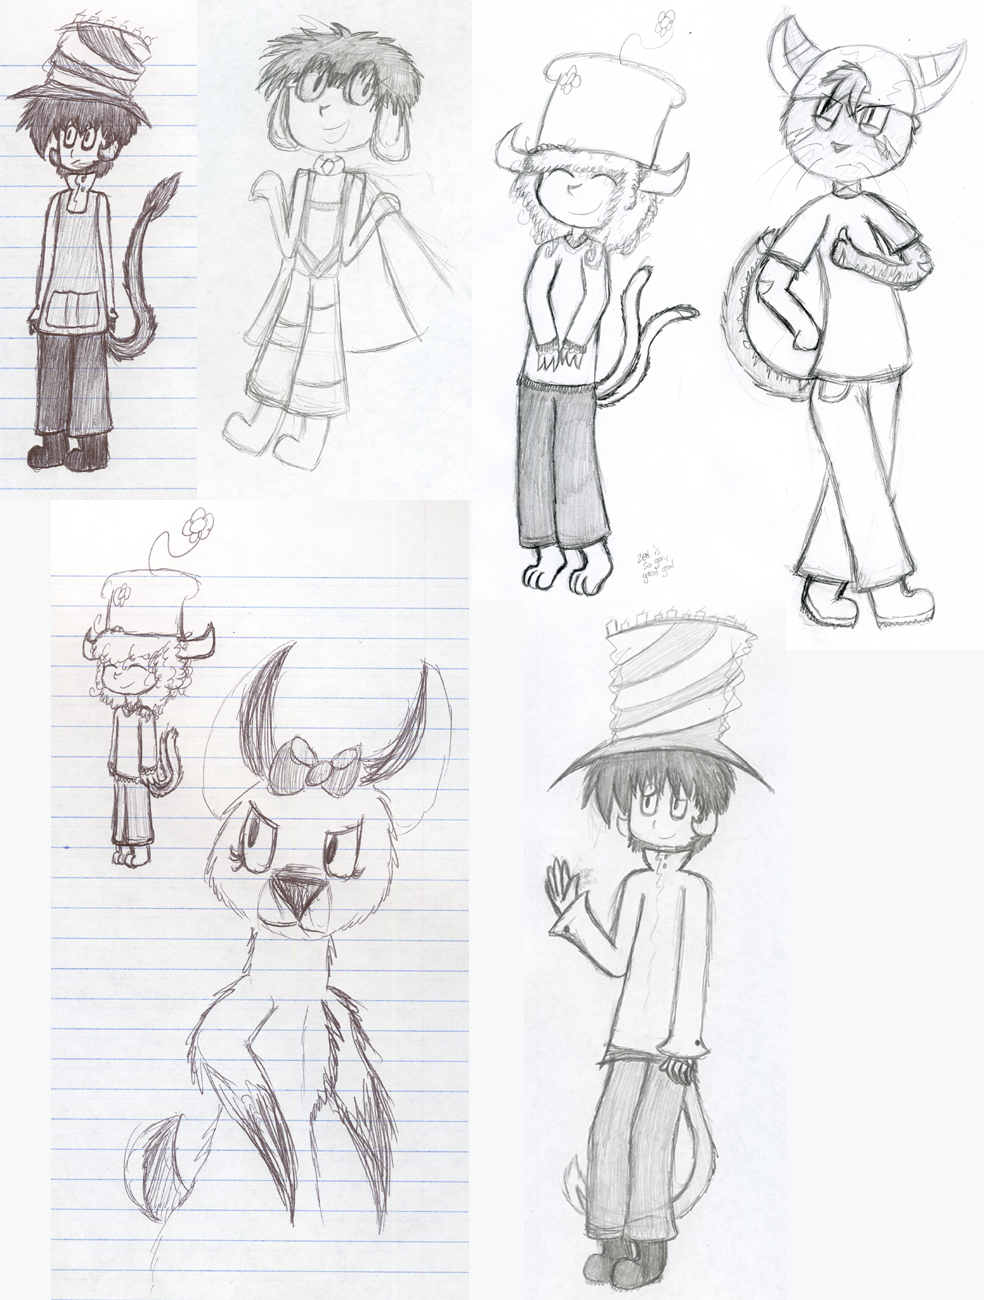 old doodles